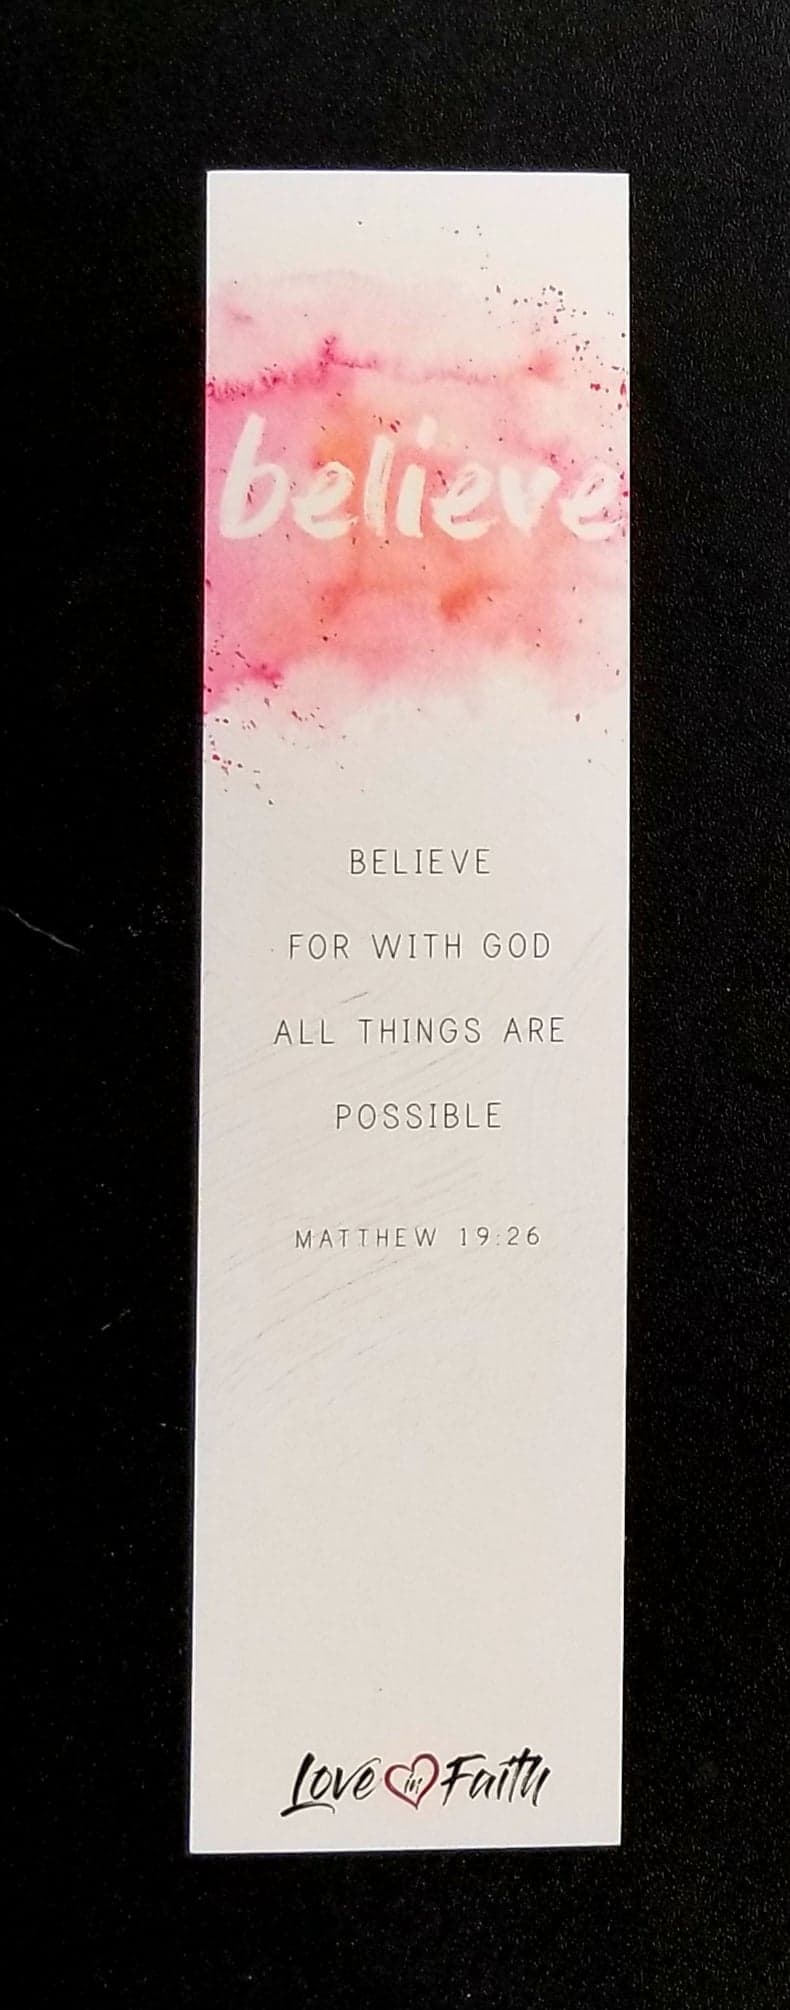 Bookmarks (Love in Faith)